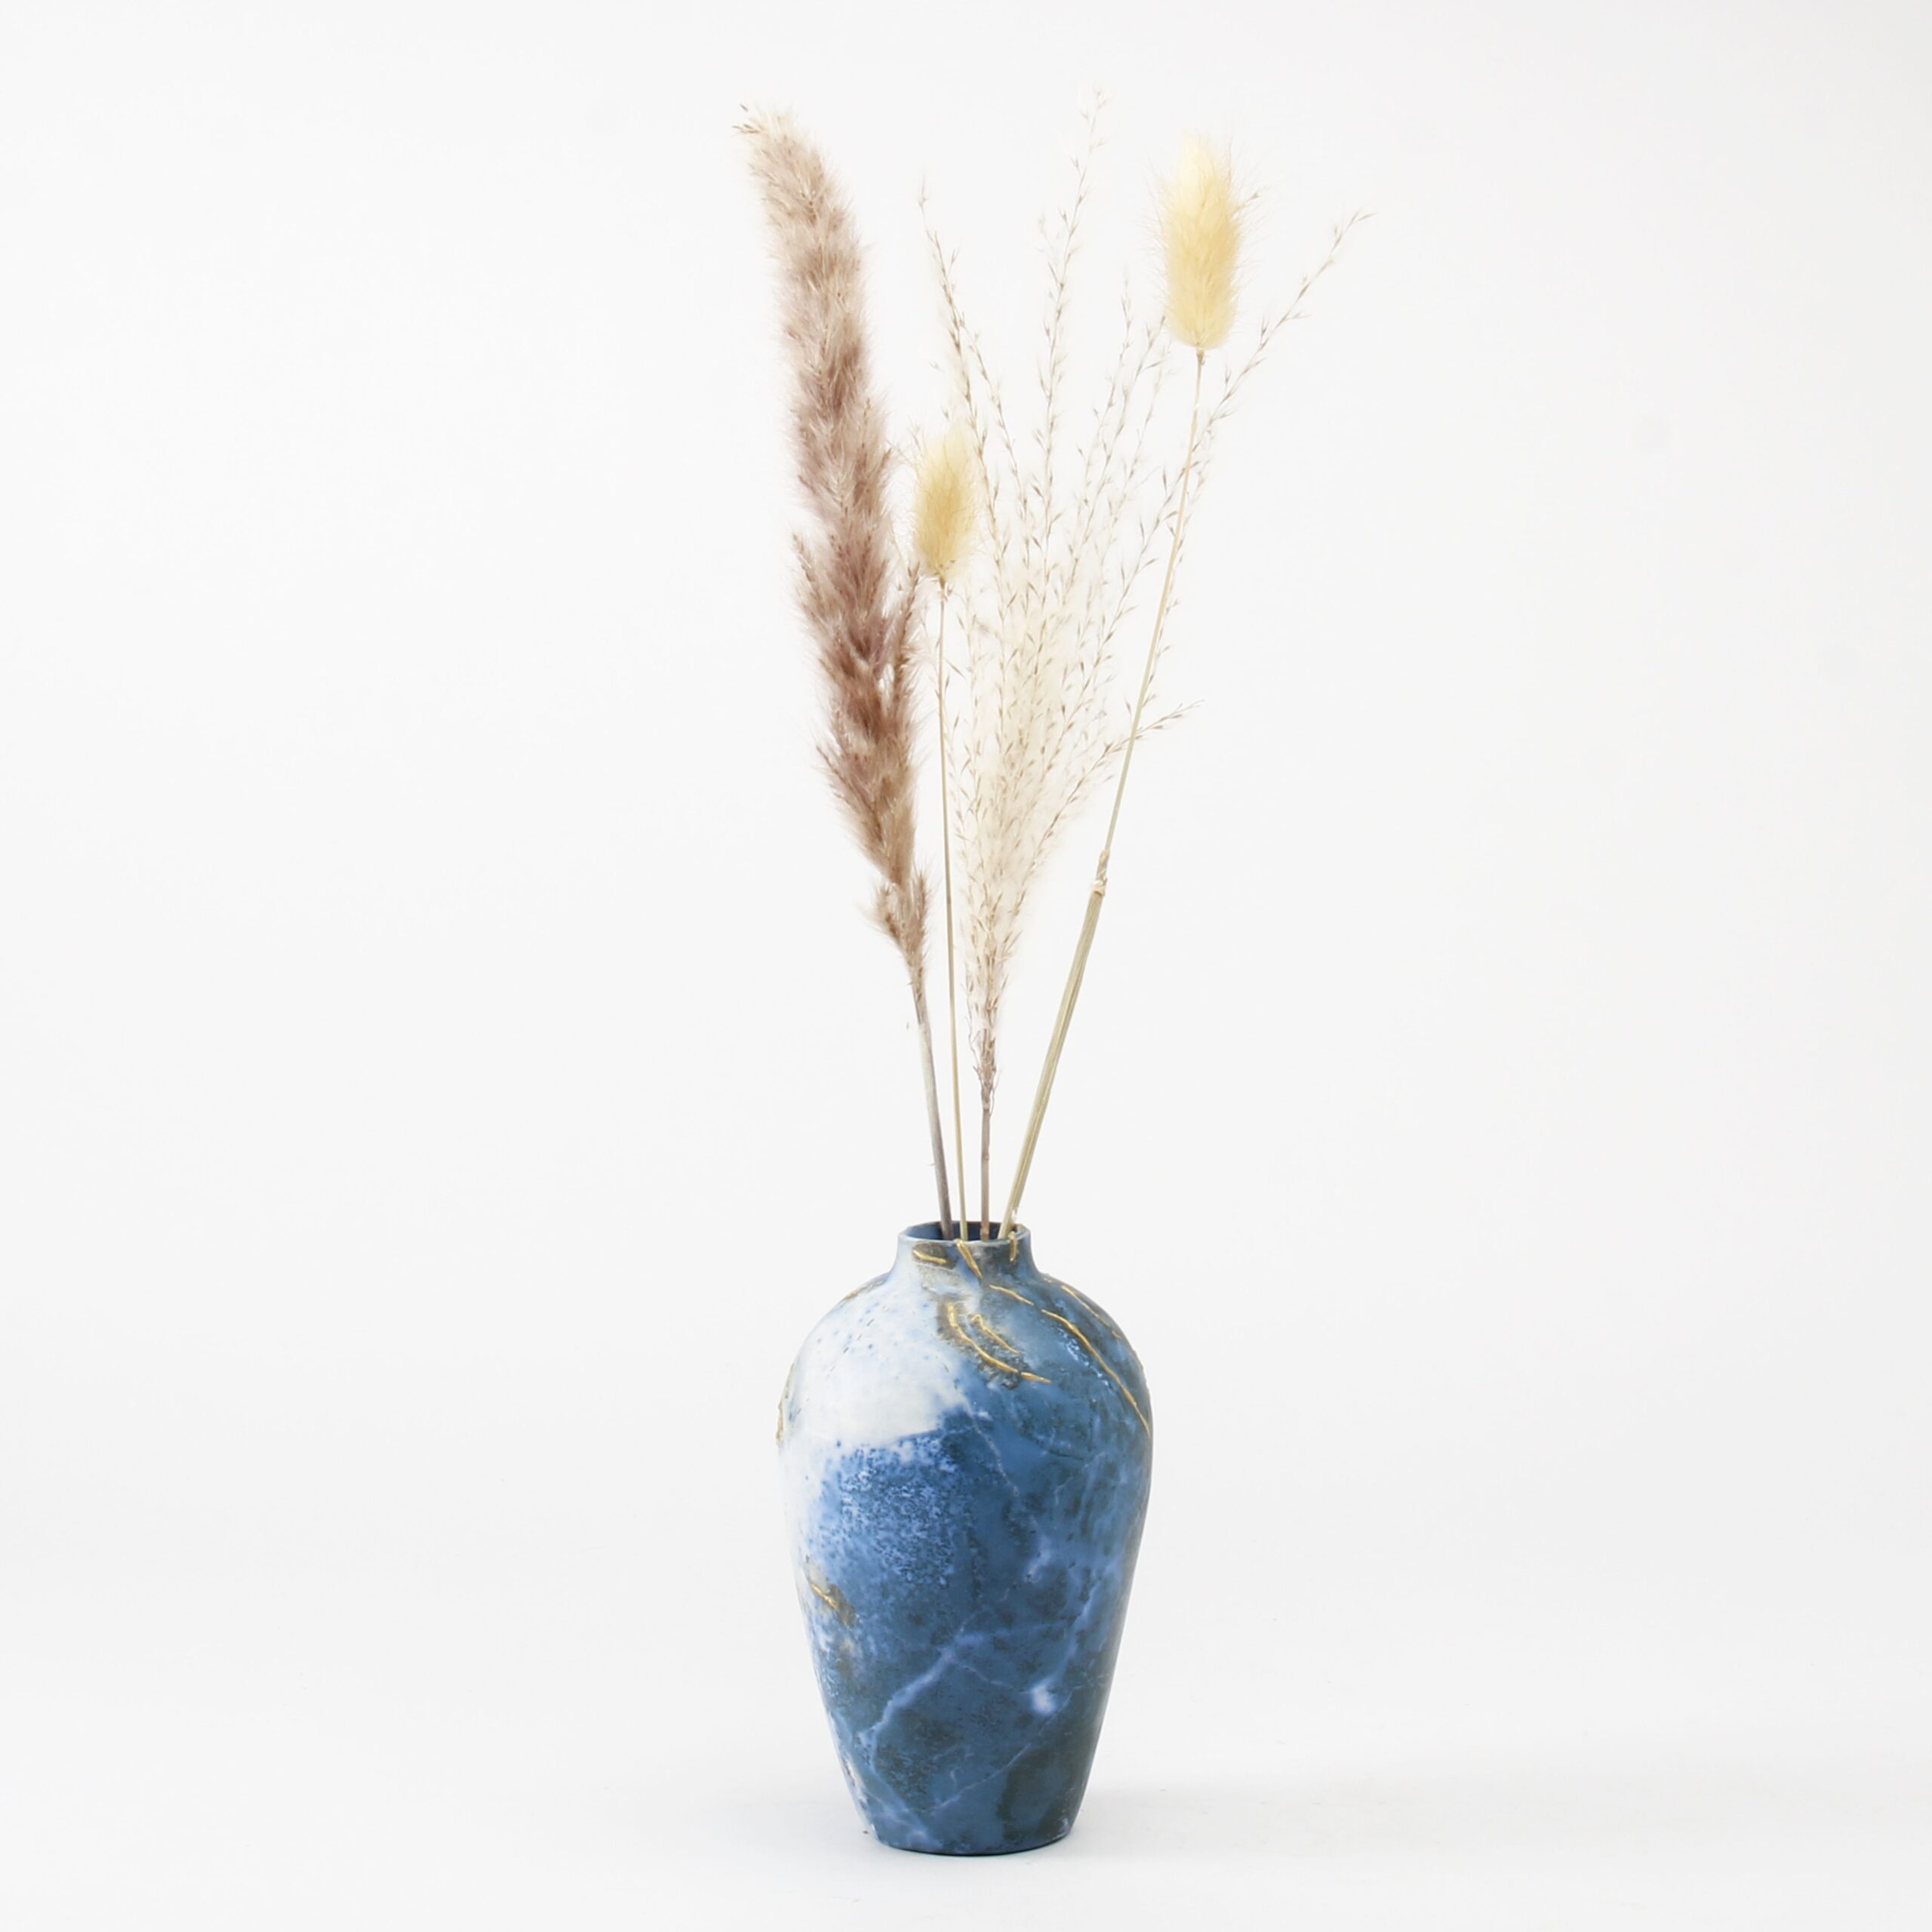 Alison Brannen: Medium Classic Urn Product Image 3 of 5